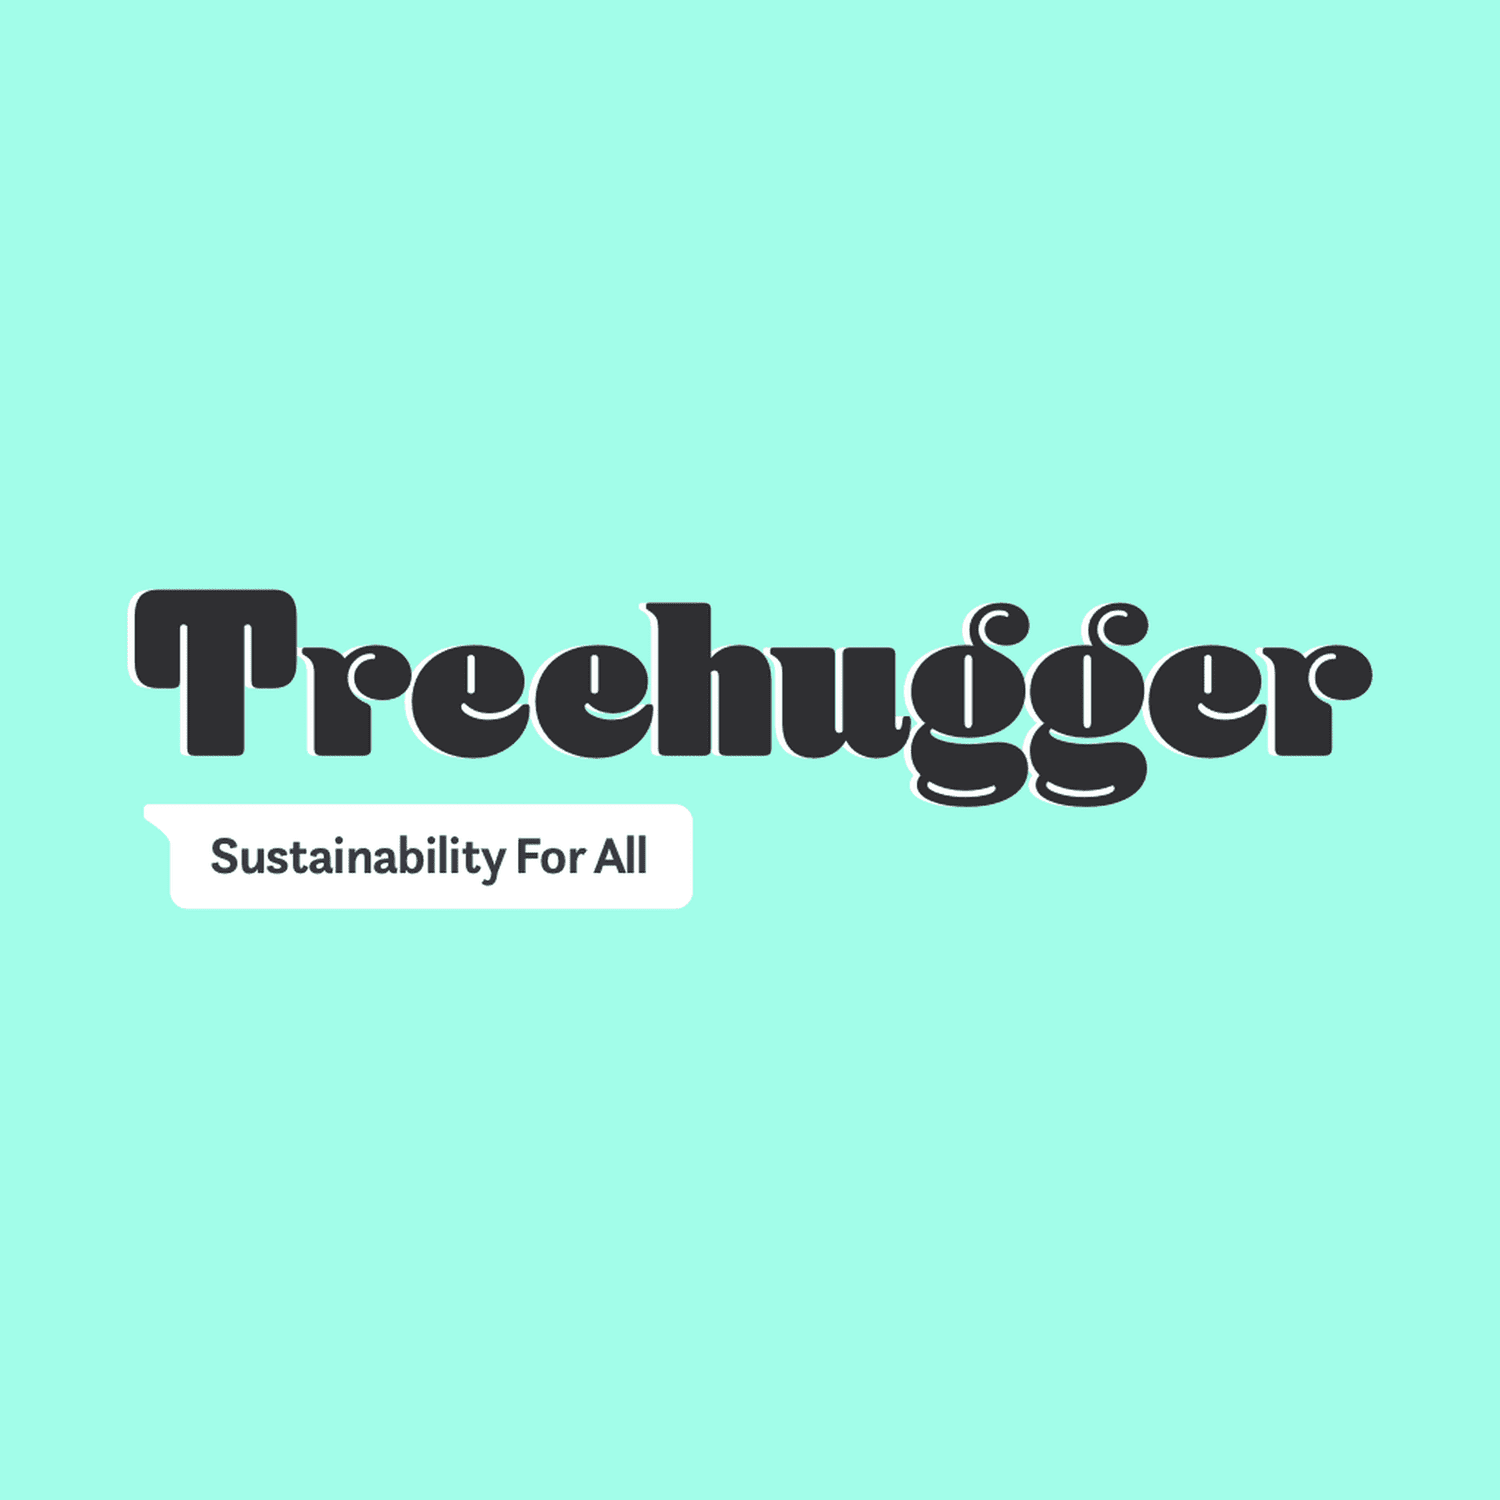 www.treehugger.com